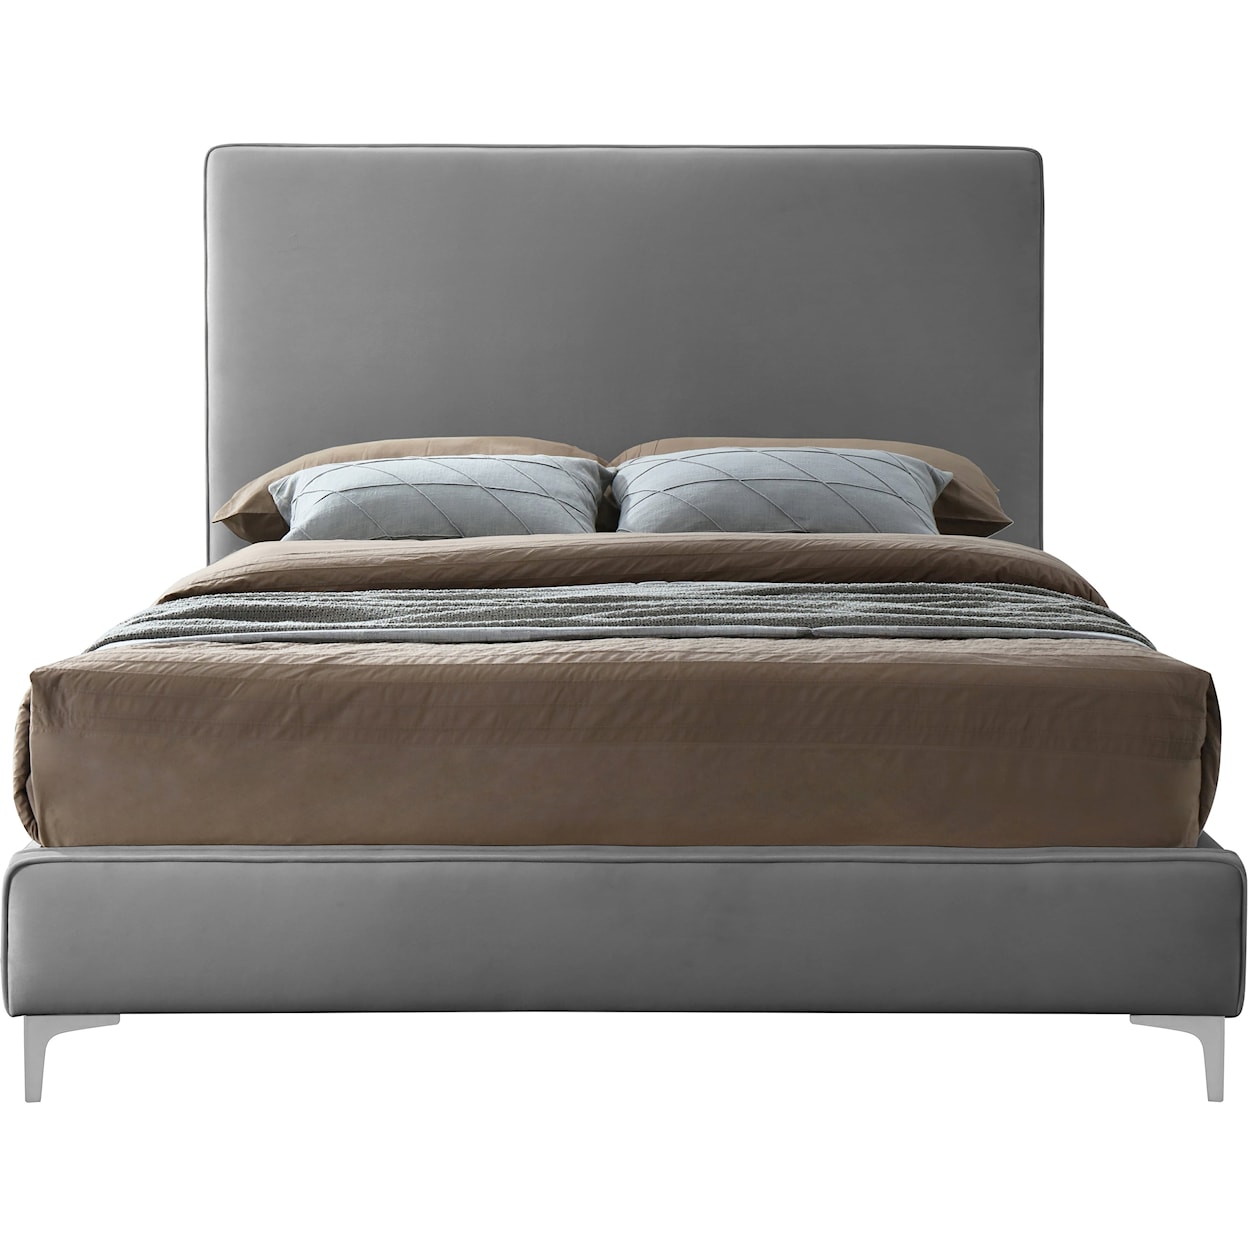 Meridian Furniture Geri Queen Bed